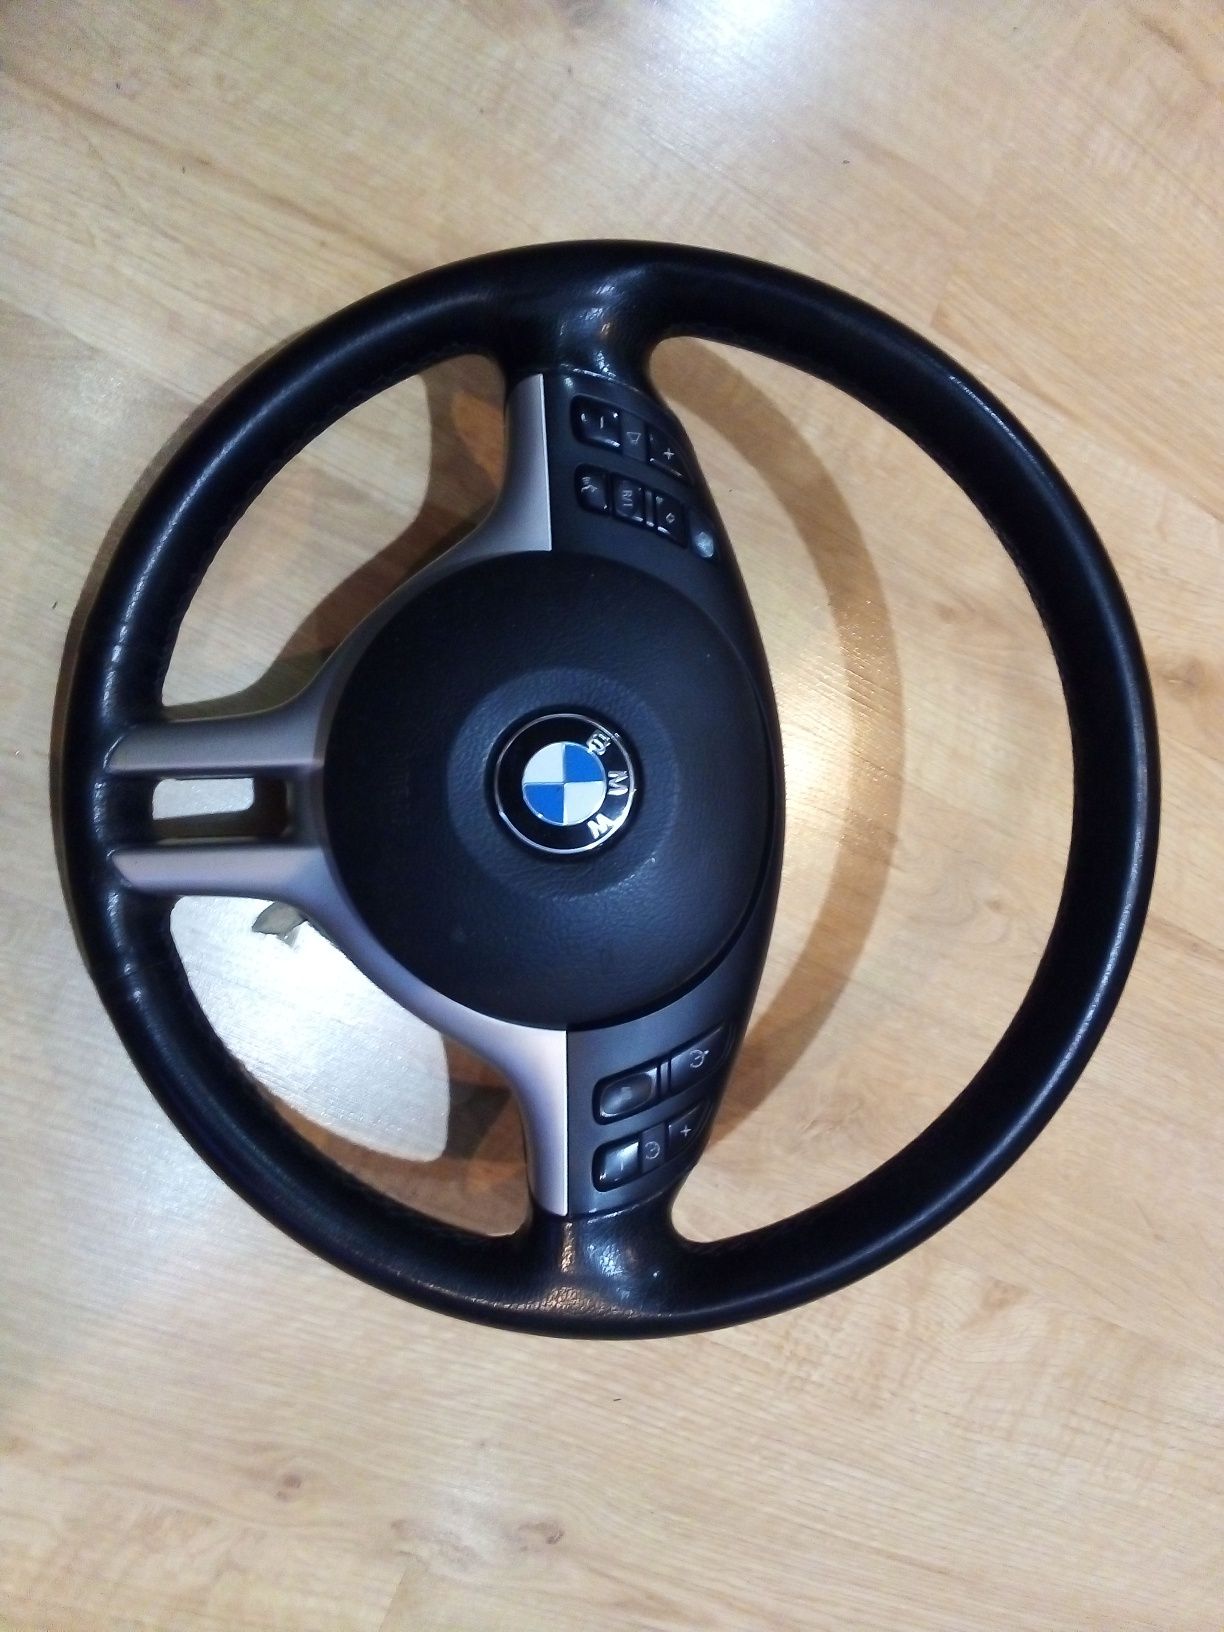 Kierownica BMW E46 lift x5 e39 multimedialna wielofunkcyjna zobacz!